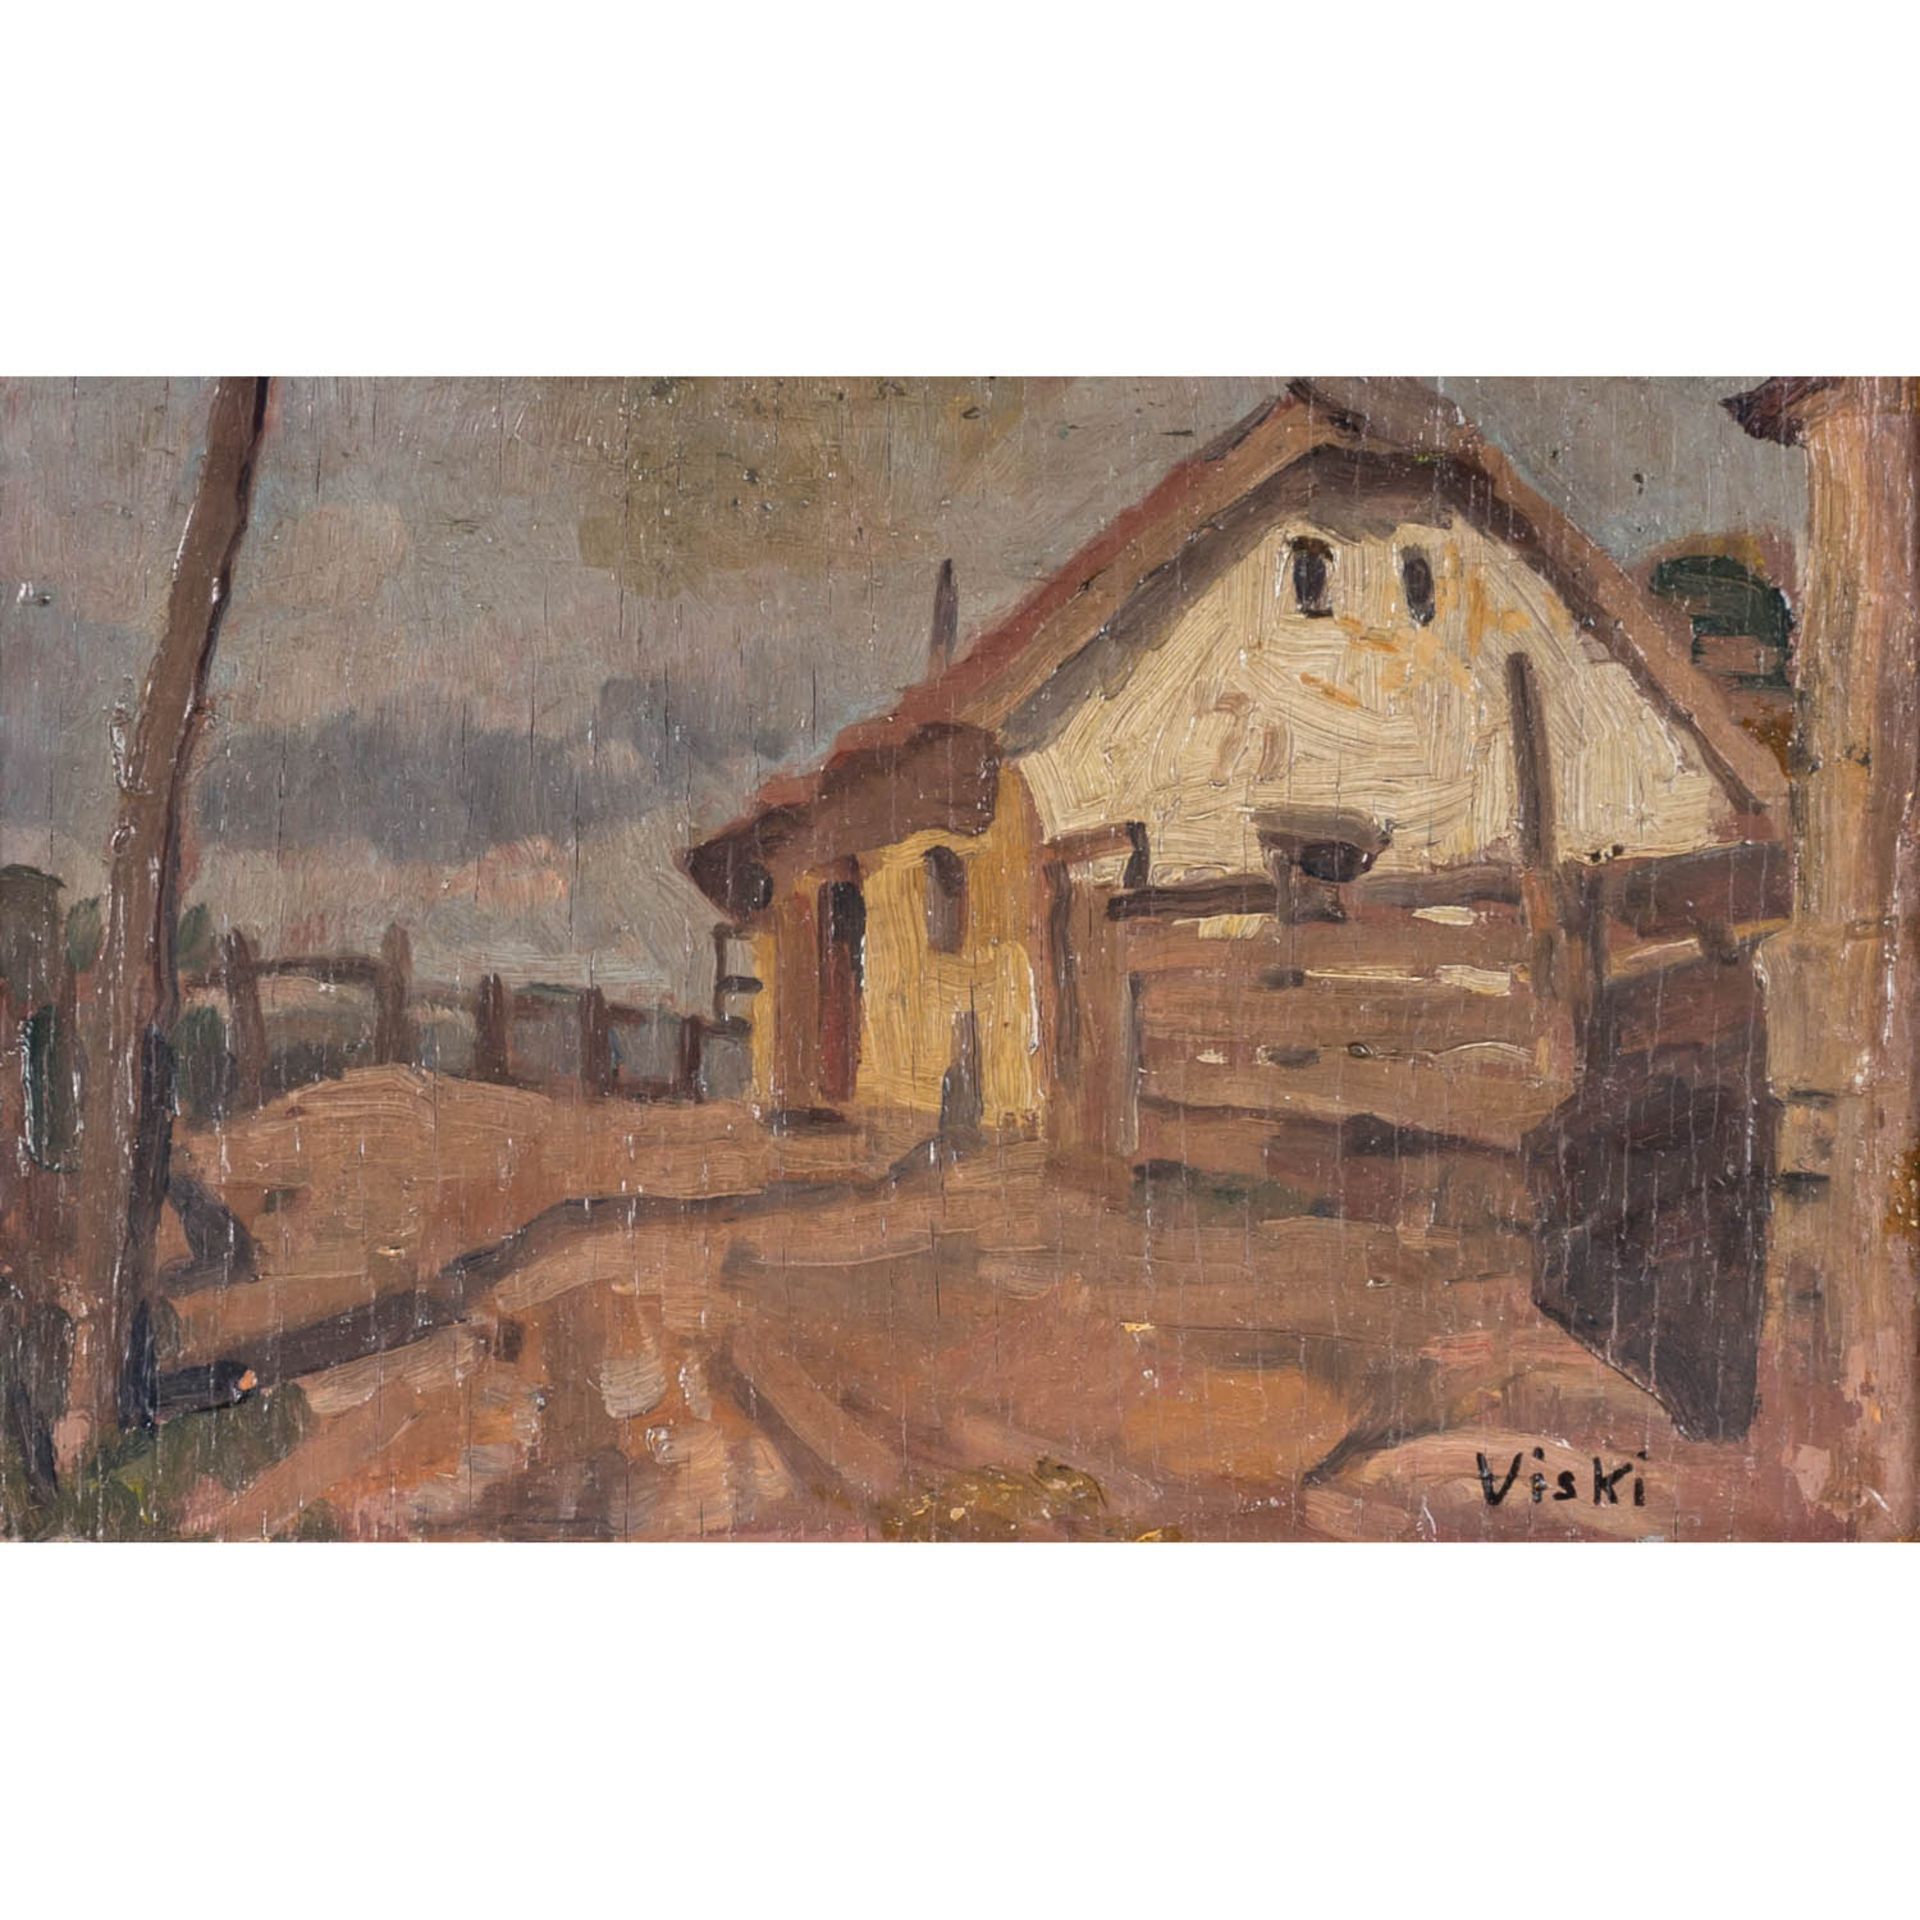 VISKI, JÀNOS (1891-1987) "Dorfstraße"